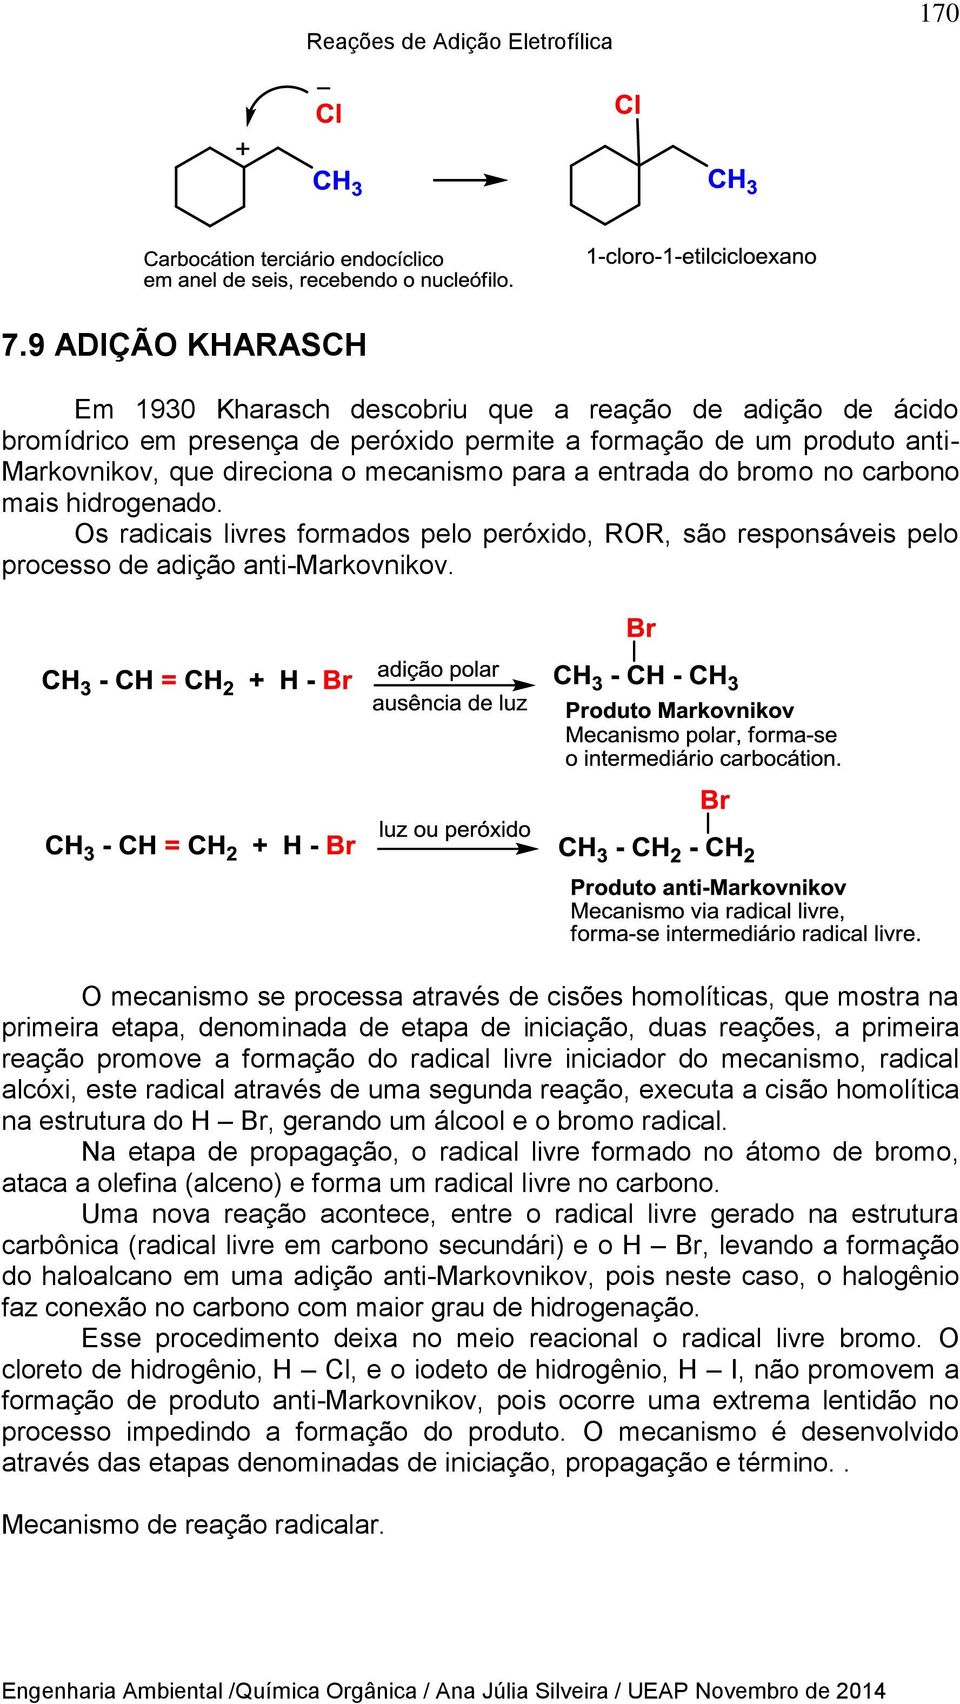 entrada do bromo no carbono mais hidrogenado. Os radicais livres formados pelo peróxido, ROR, são responsáveis pelo processo de adição anti-markovnikov.